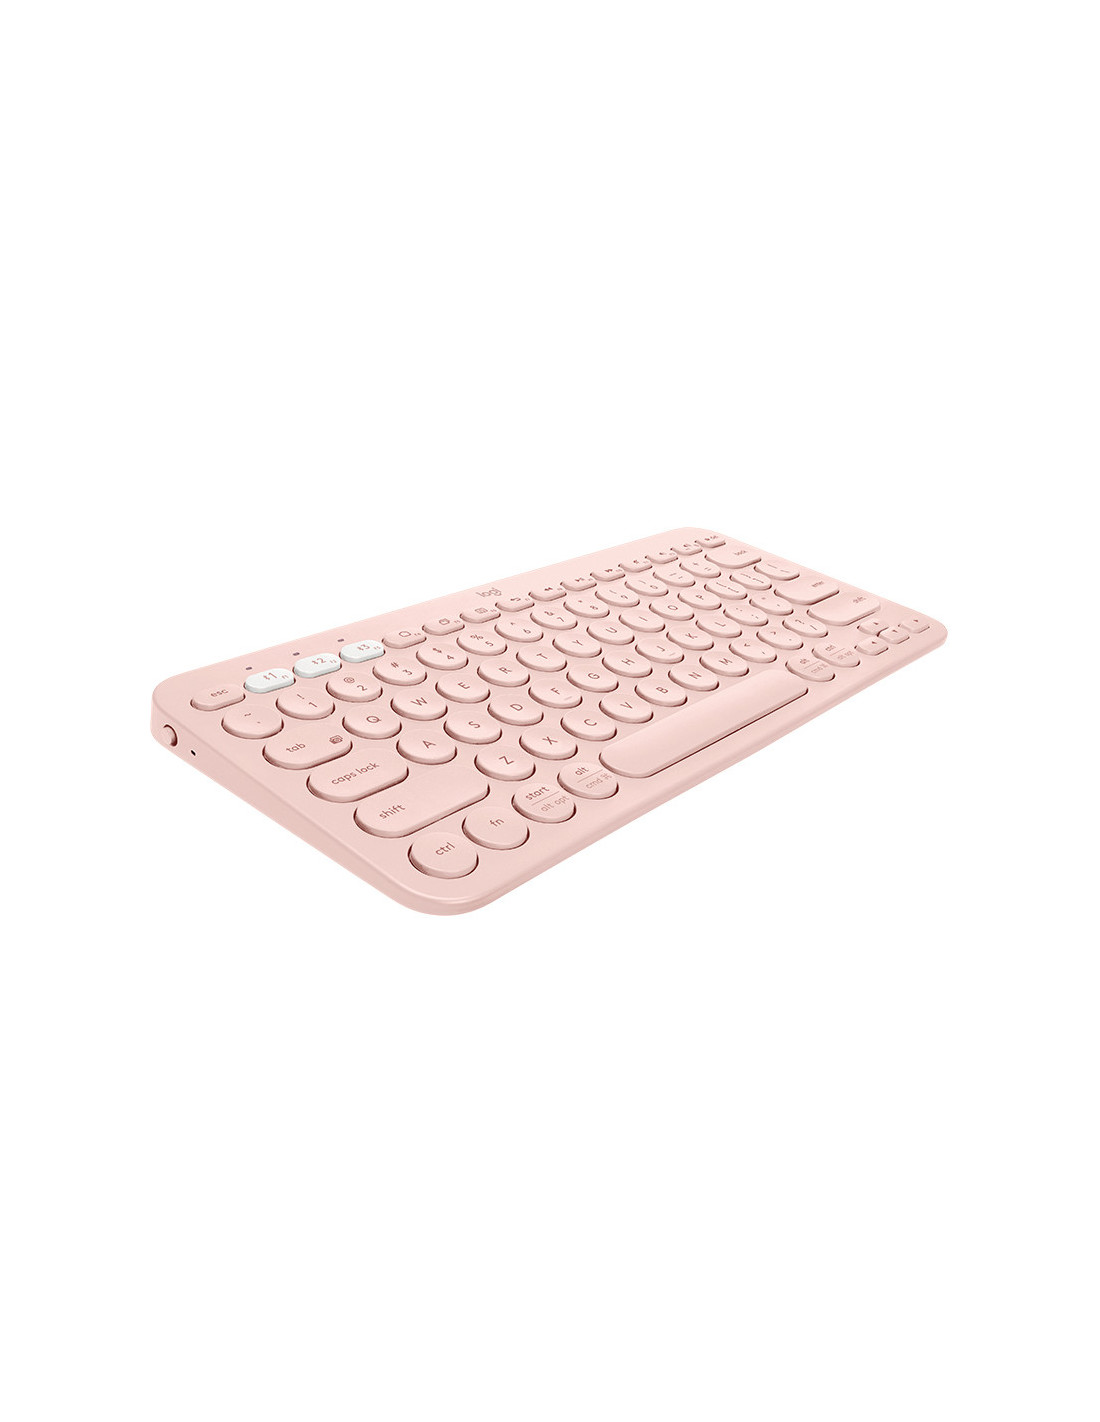 Logitech Wireless Keyboard K380 - Rosa (Inglês)